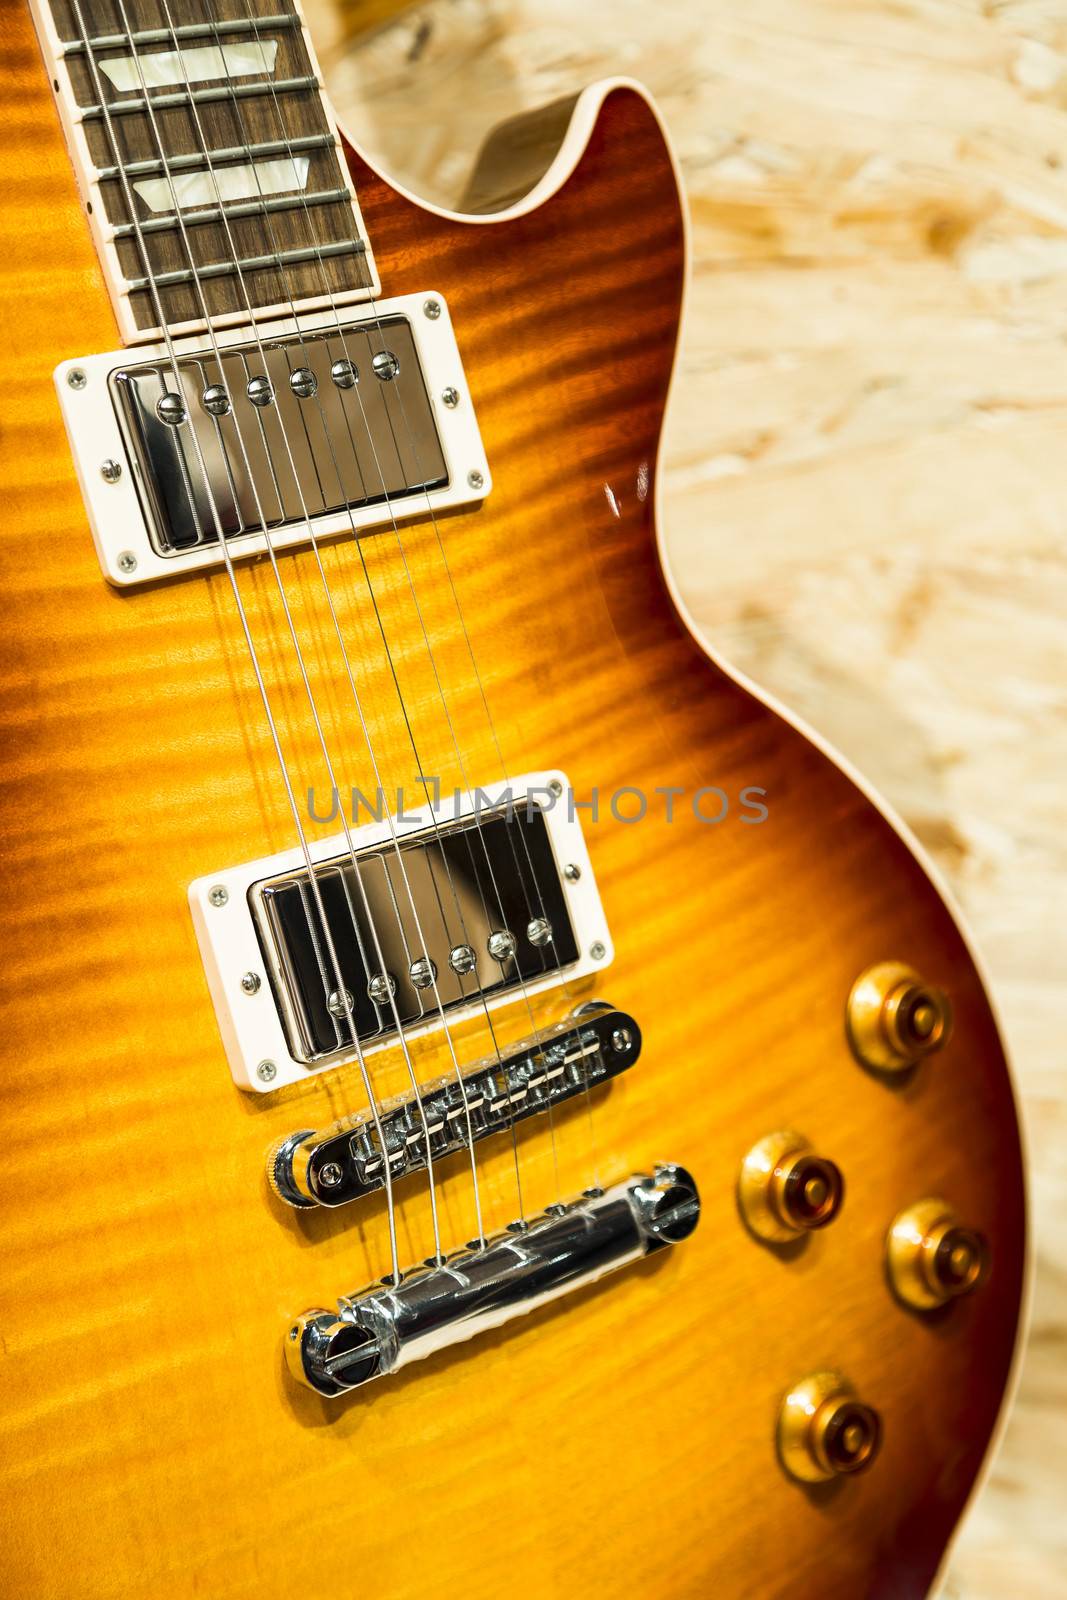 A close up vertical shot of a electric guitar